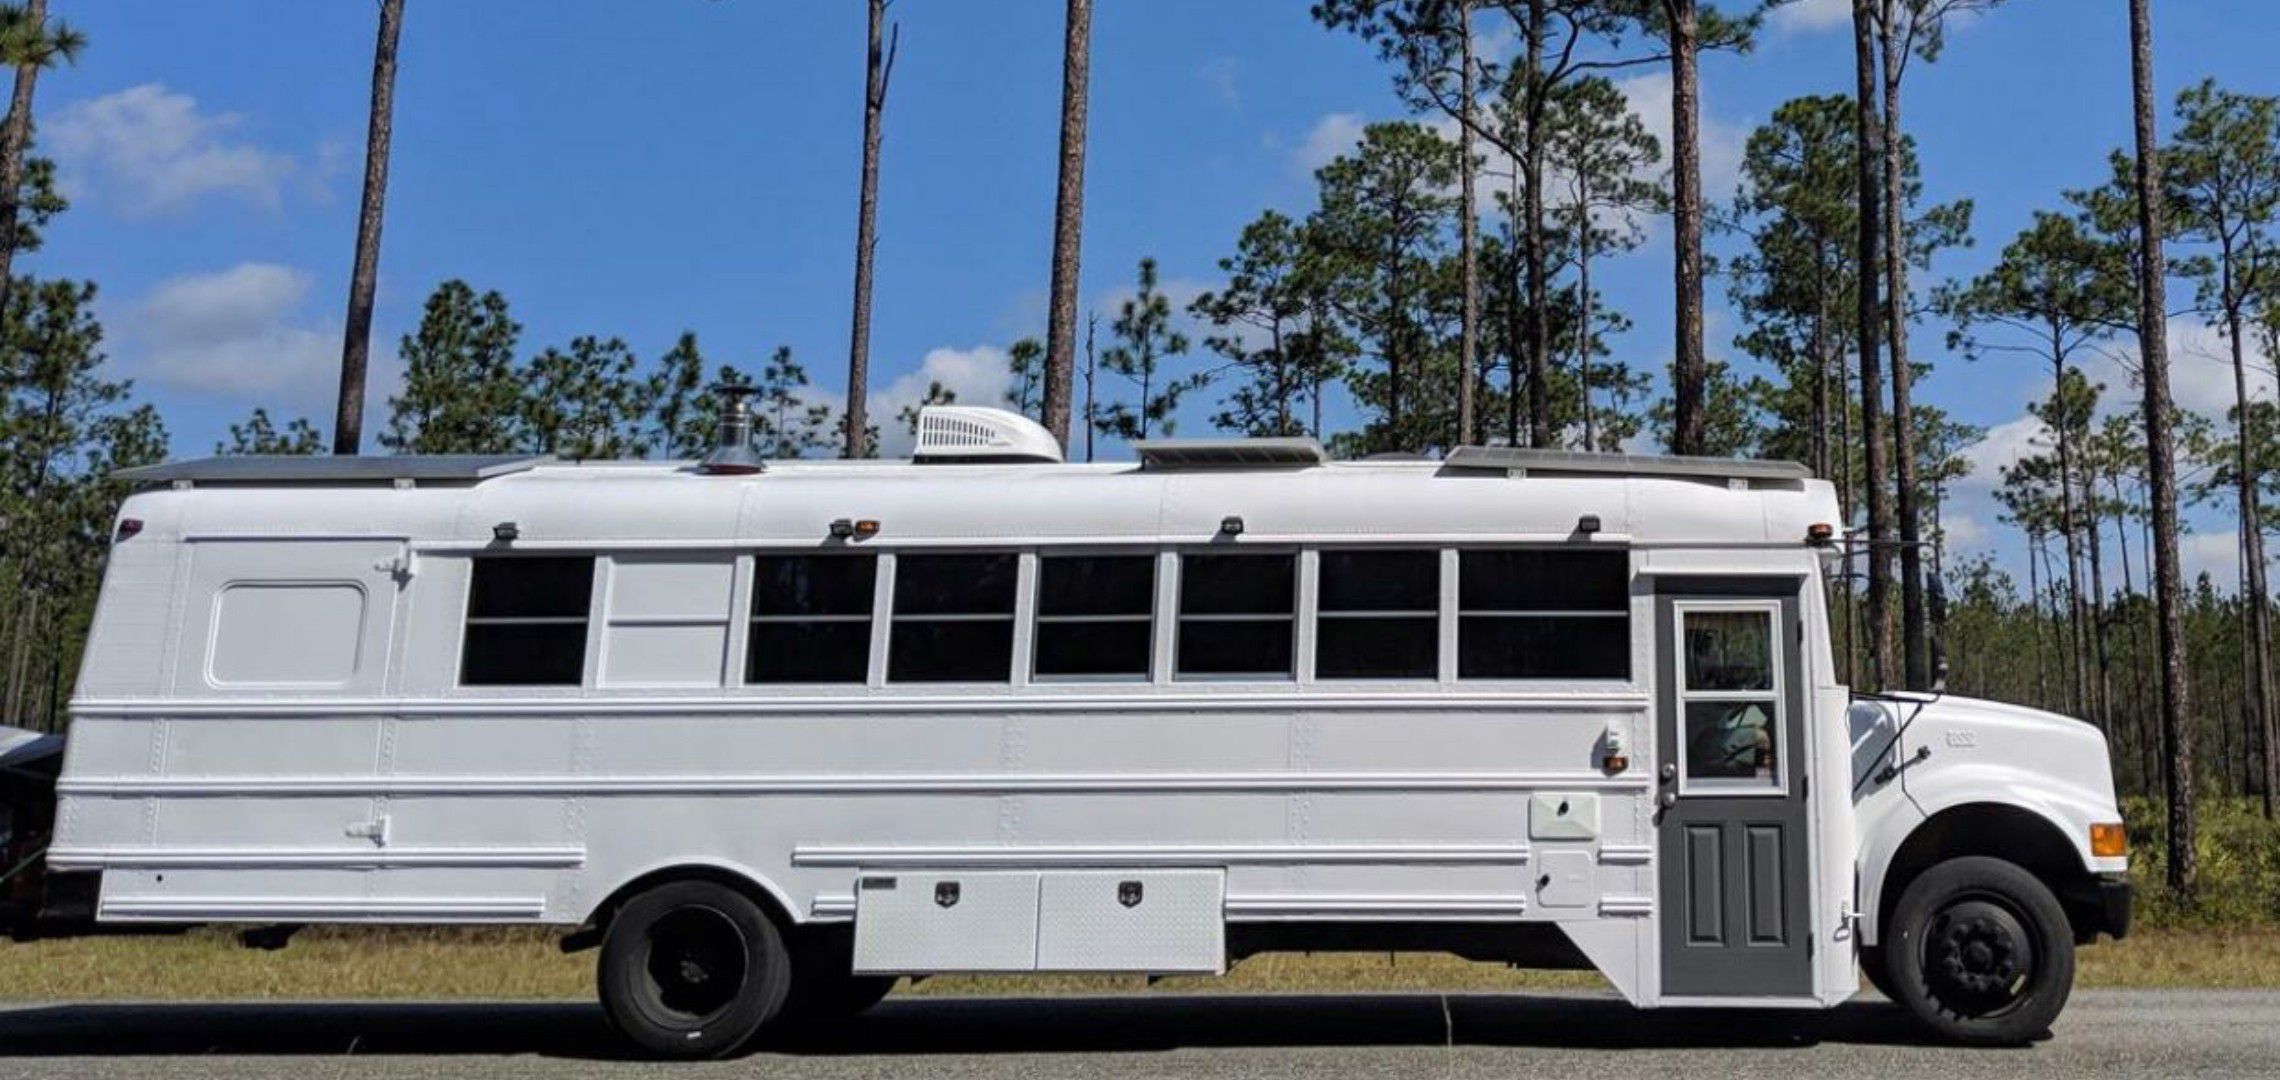 Converted School Bus - RV Trailer Camper